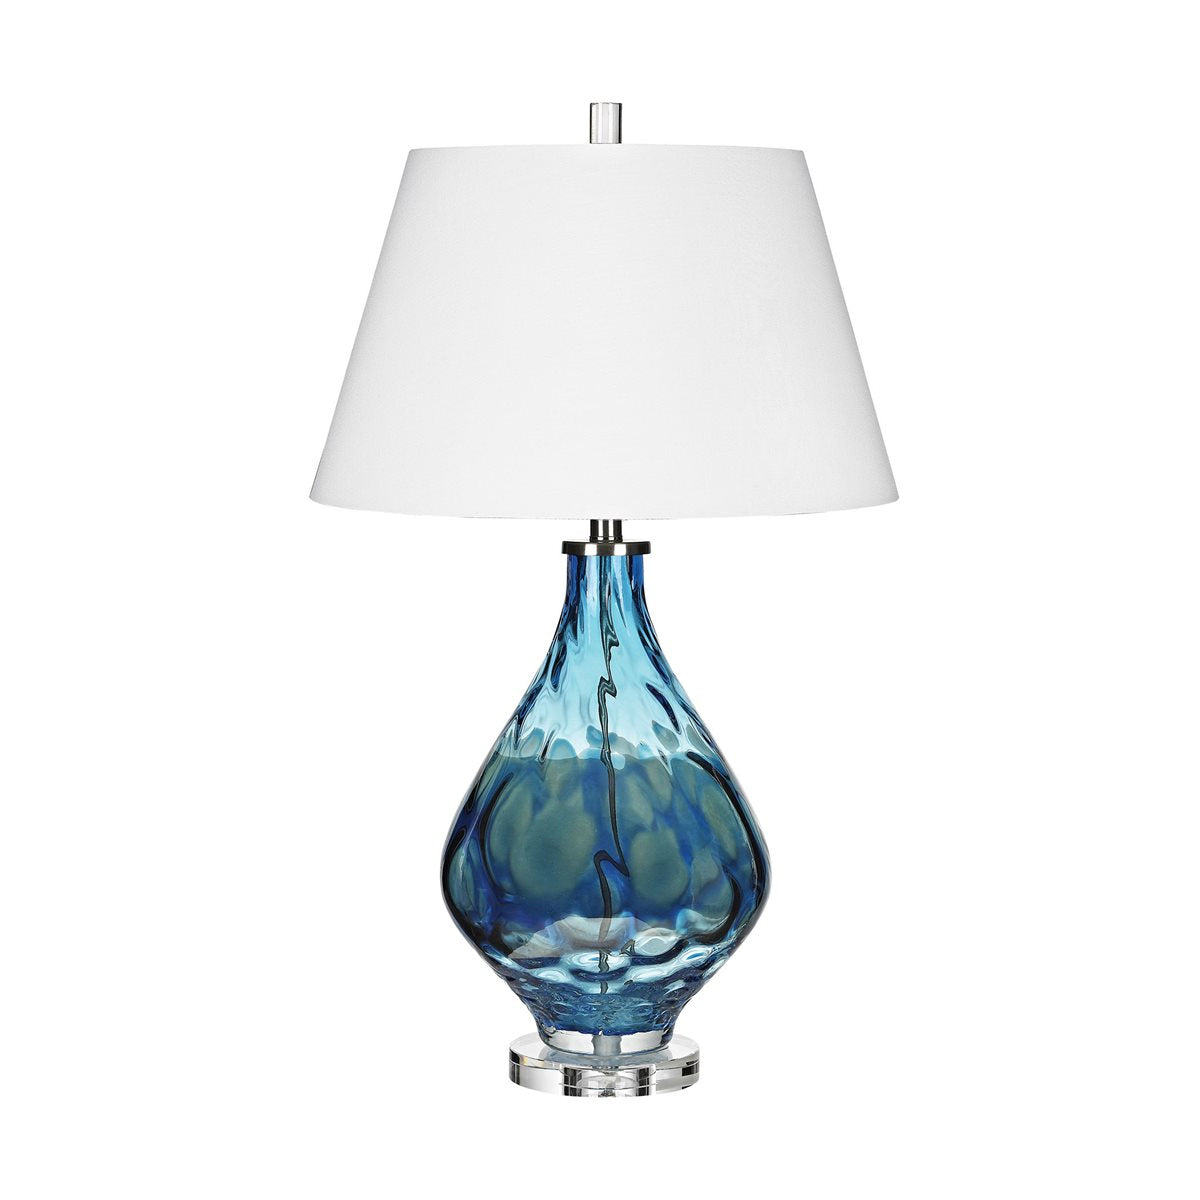 ELK Home - D3060 - One Light Table Lamp - Gush - Blue